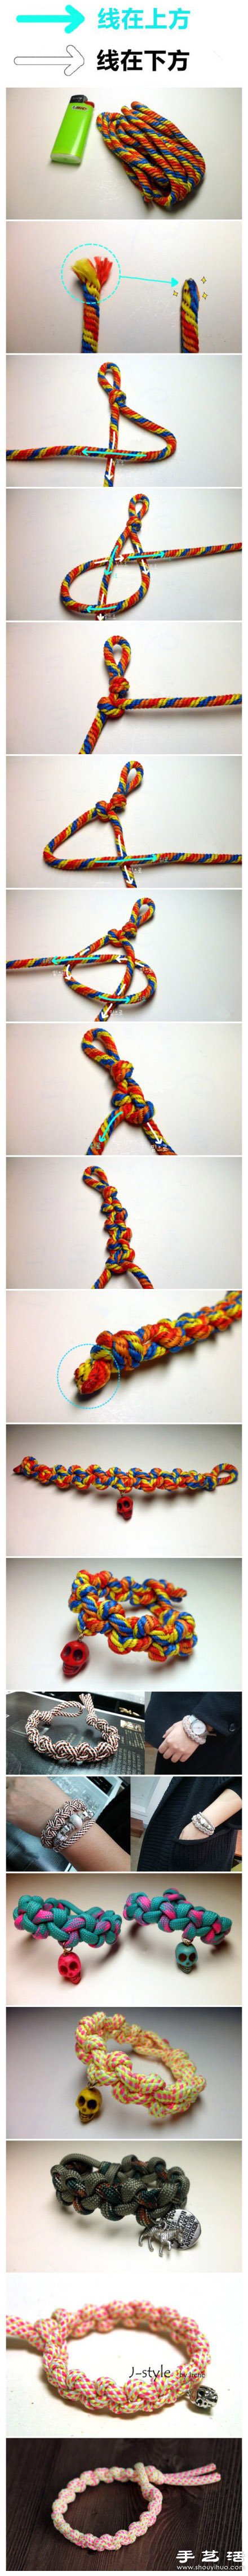 韩式风格漂亮手绳手链DIY制作图解教程